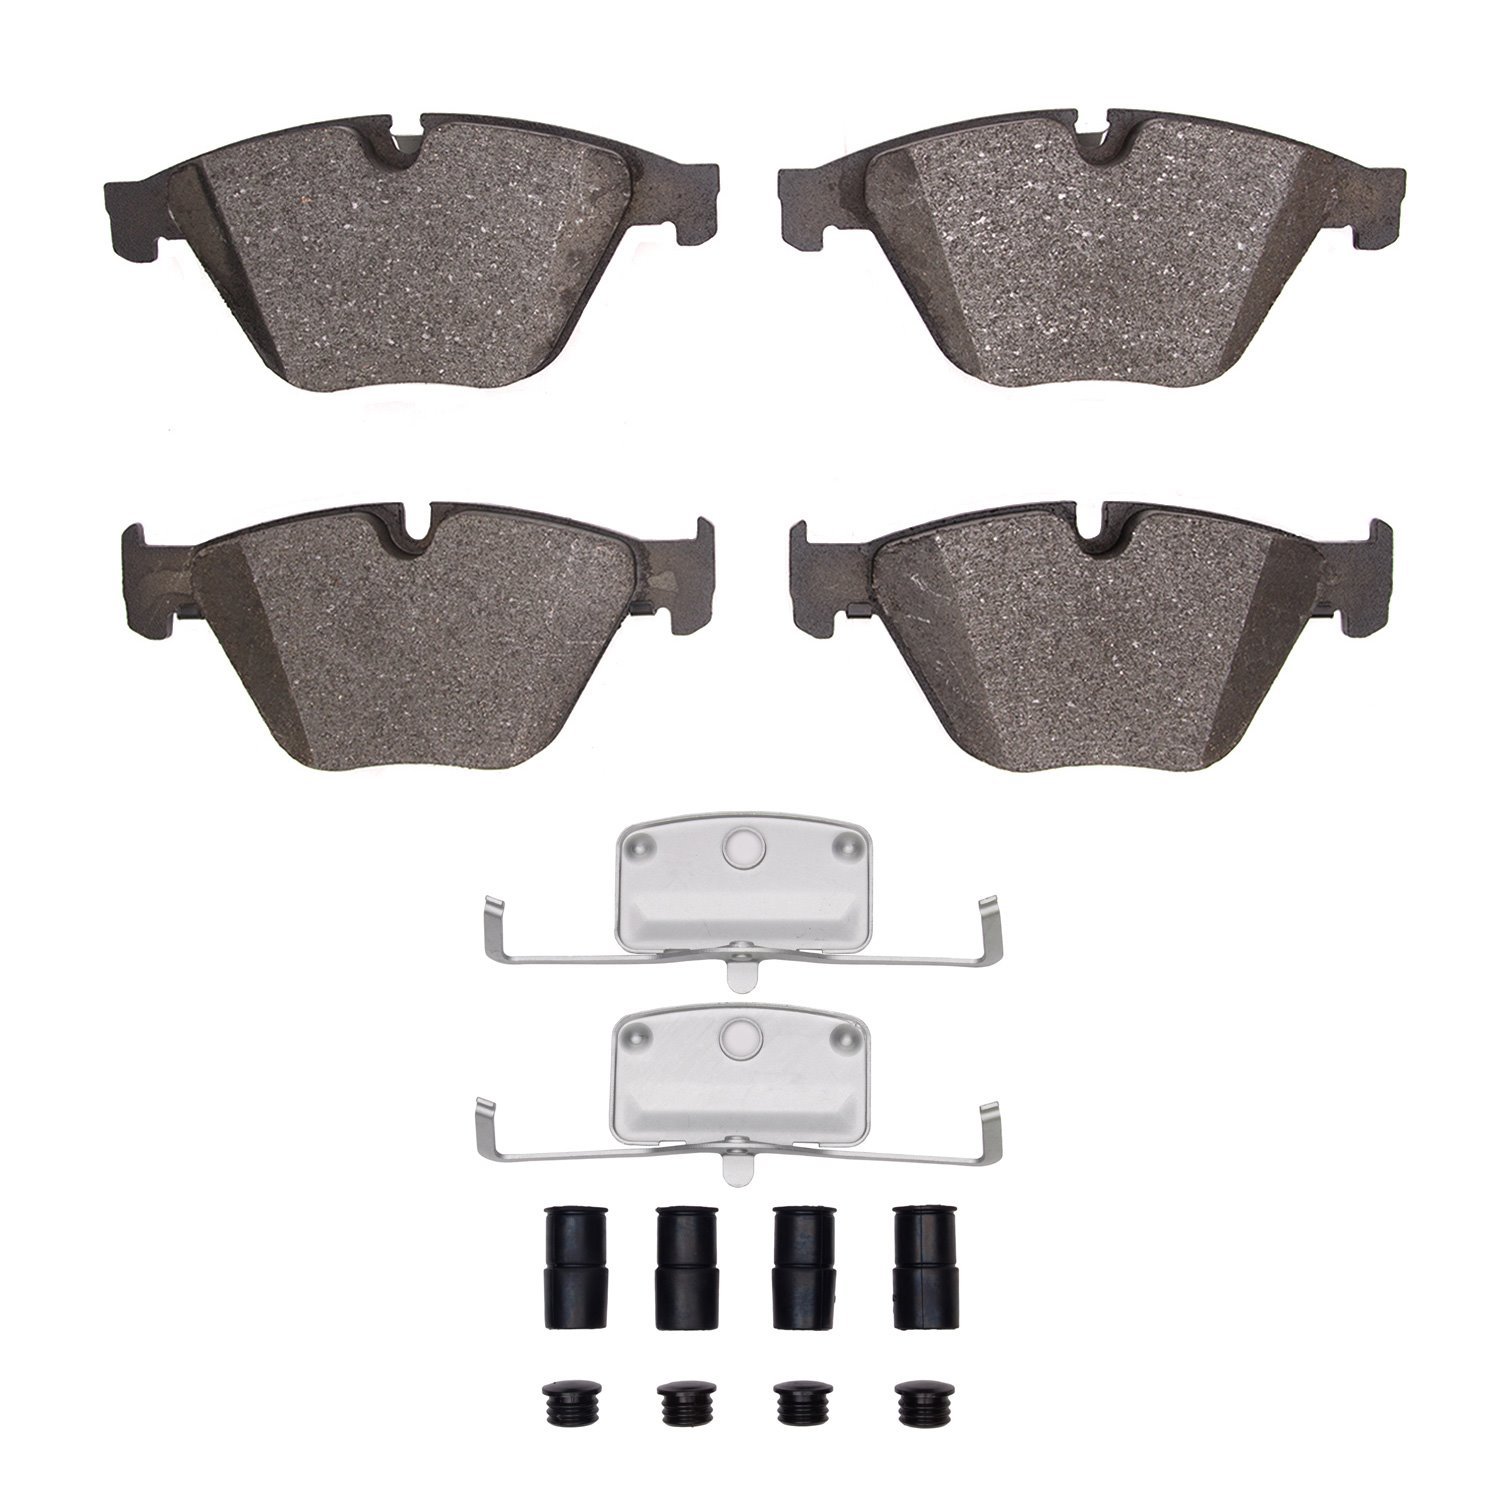 1310-1505-01 3000-Series Ceramic Brake Pads & Hardware Kit, 2011-2019 BMW, Position: Front